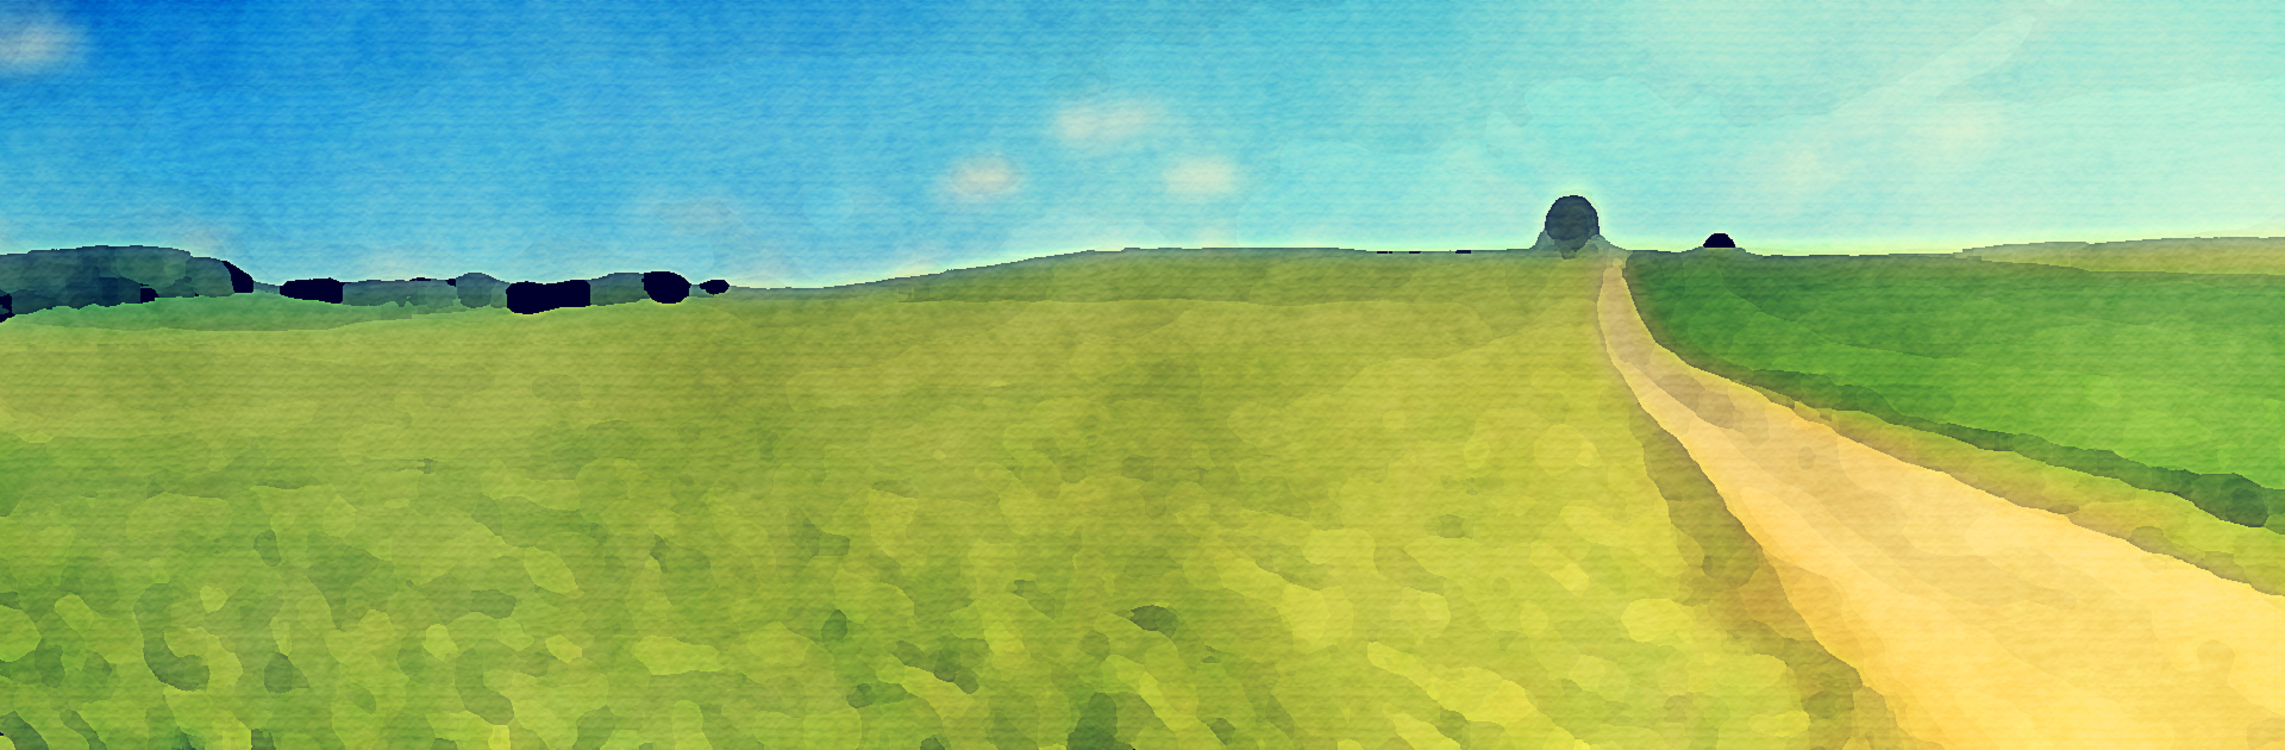 Grassland,Green,Hill